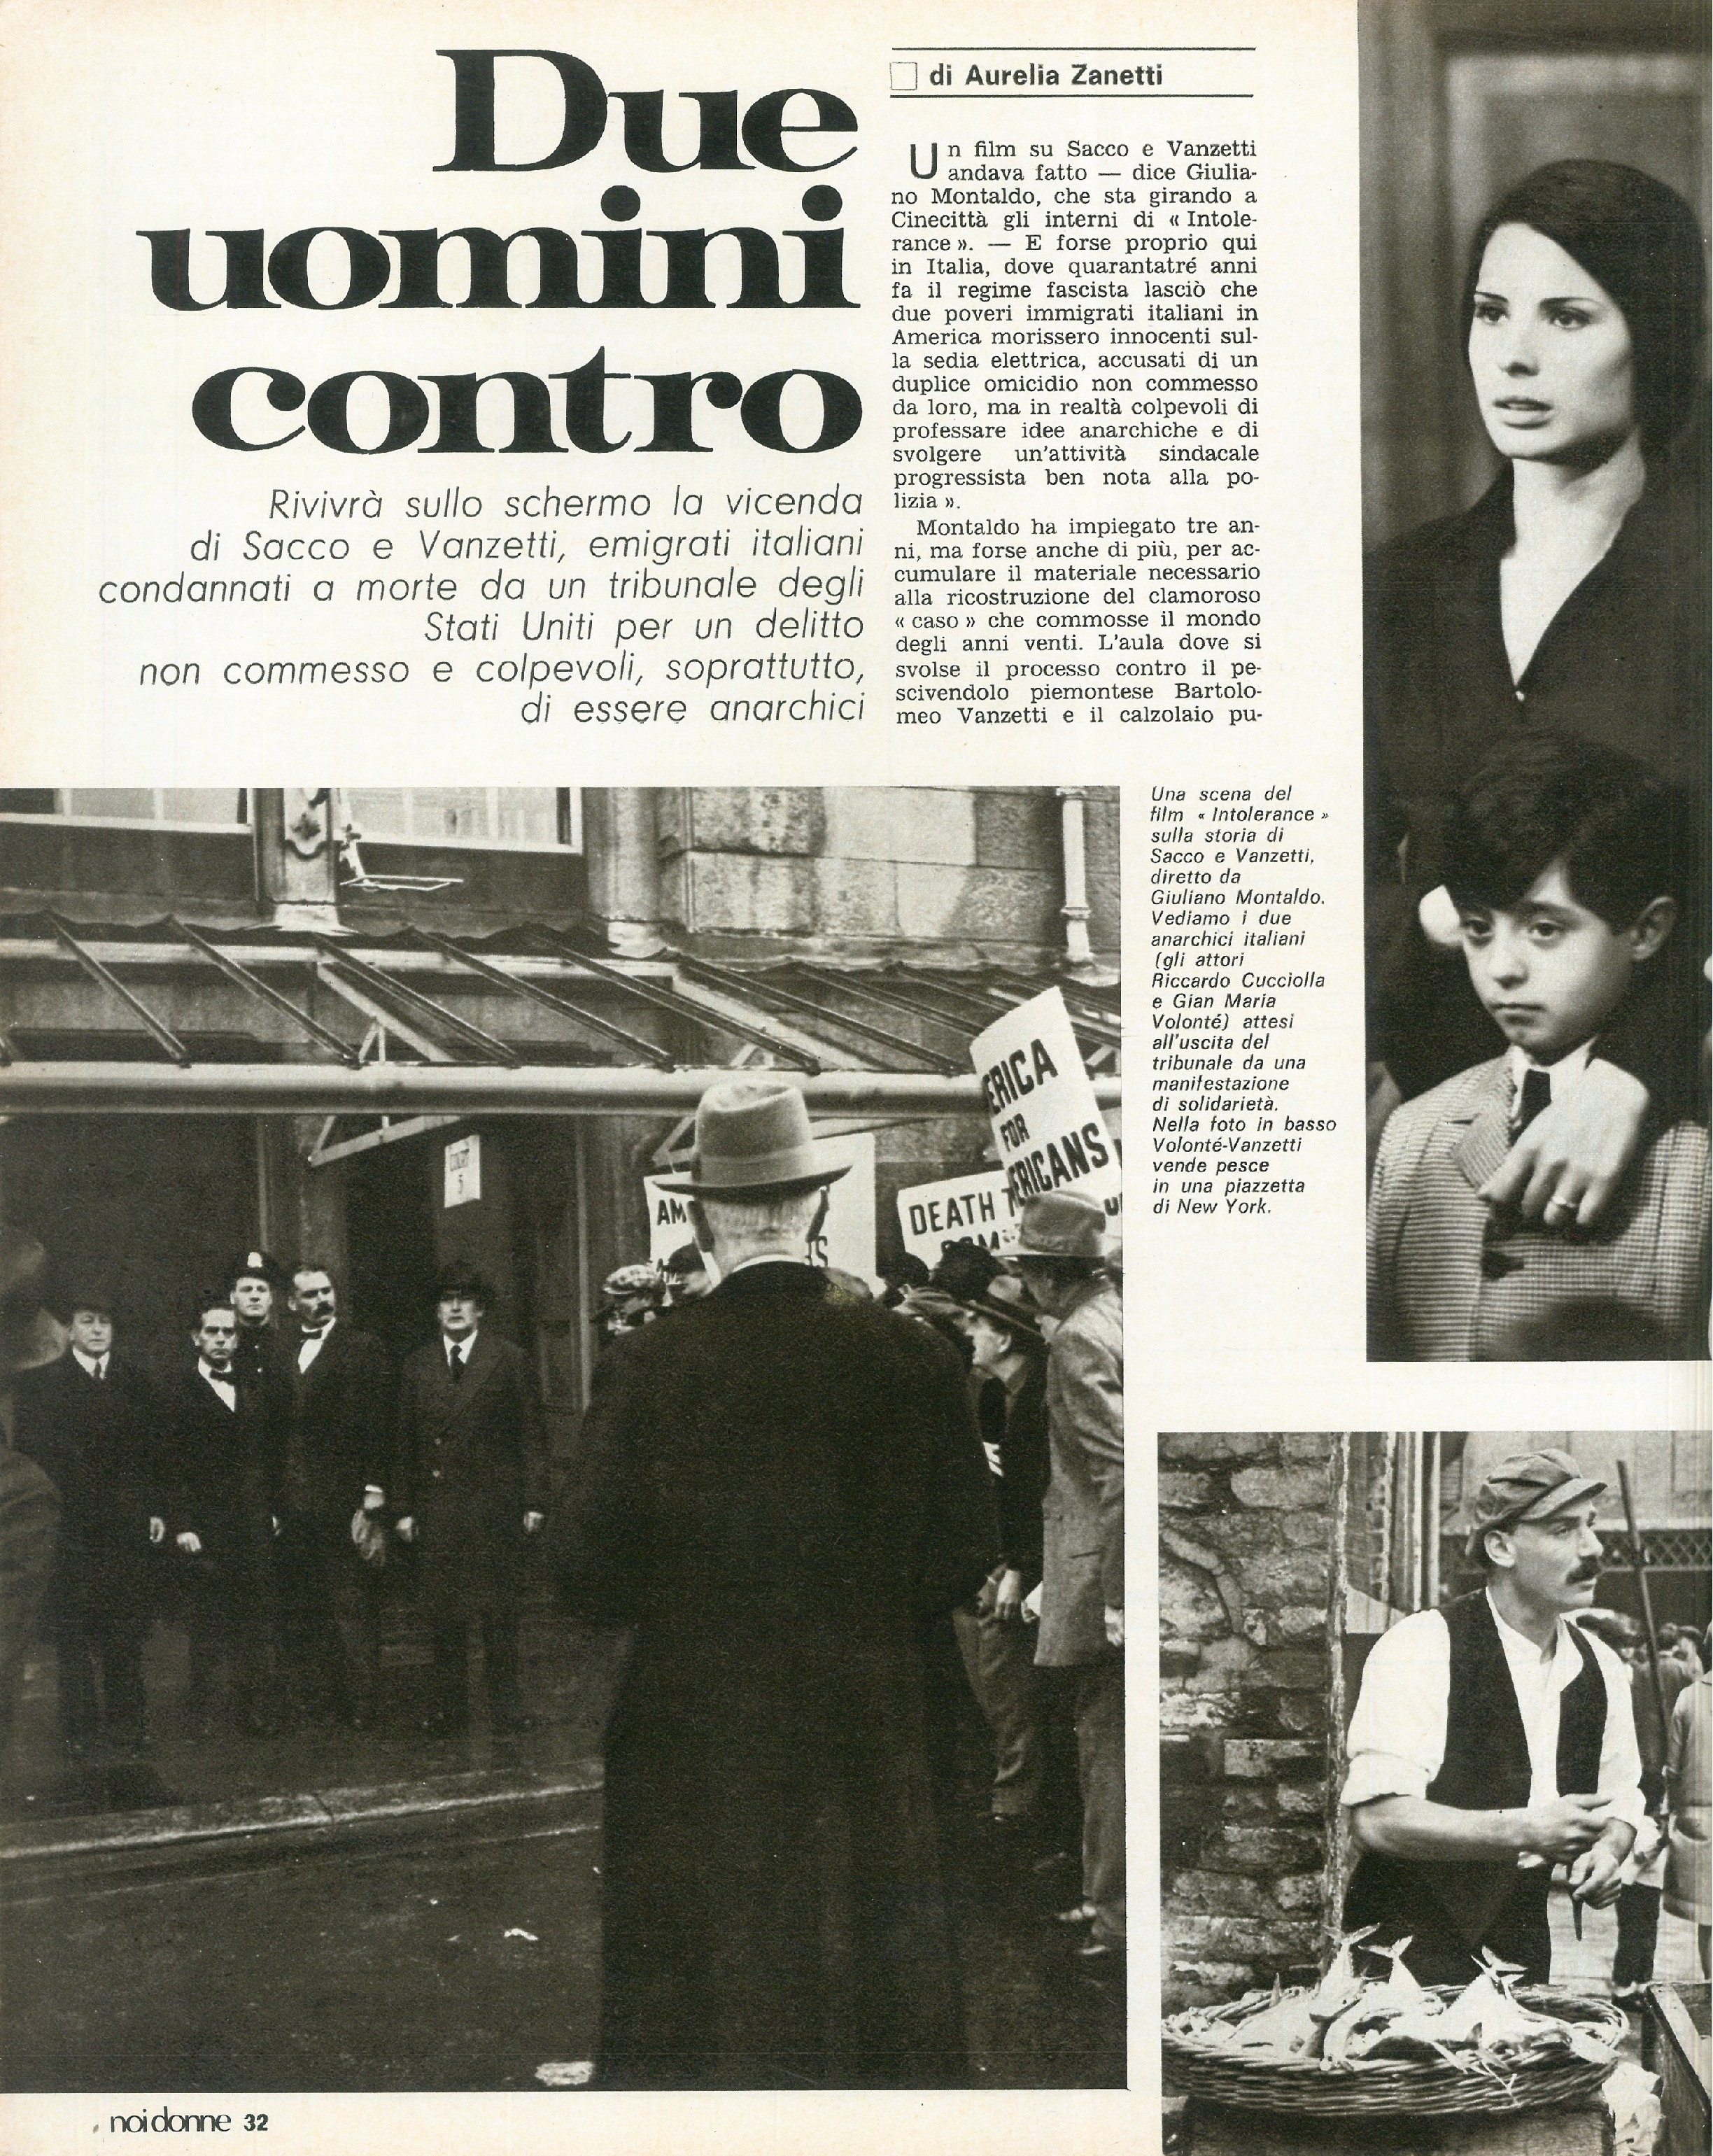 Foto: approvata la legge in Senato; Alluvione a Genova; Bolivia: continua la rivoluzione del Che Guevara; Carla Silvani, la prima donna a guidare un taxi in Italia